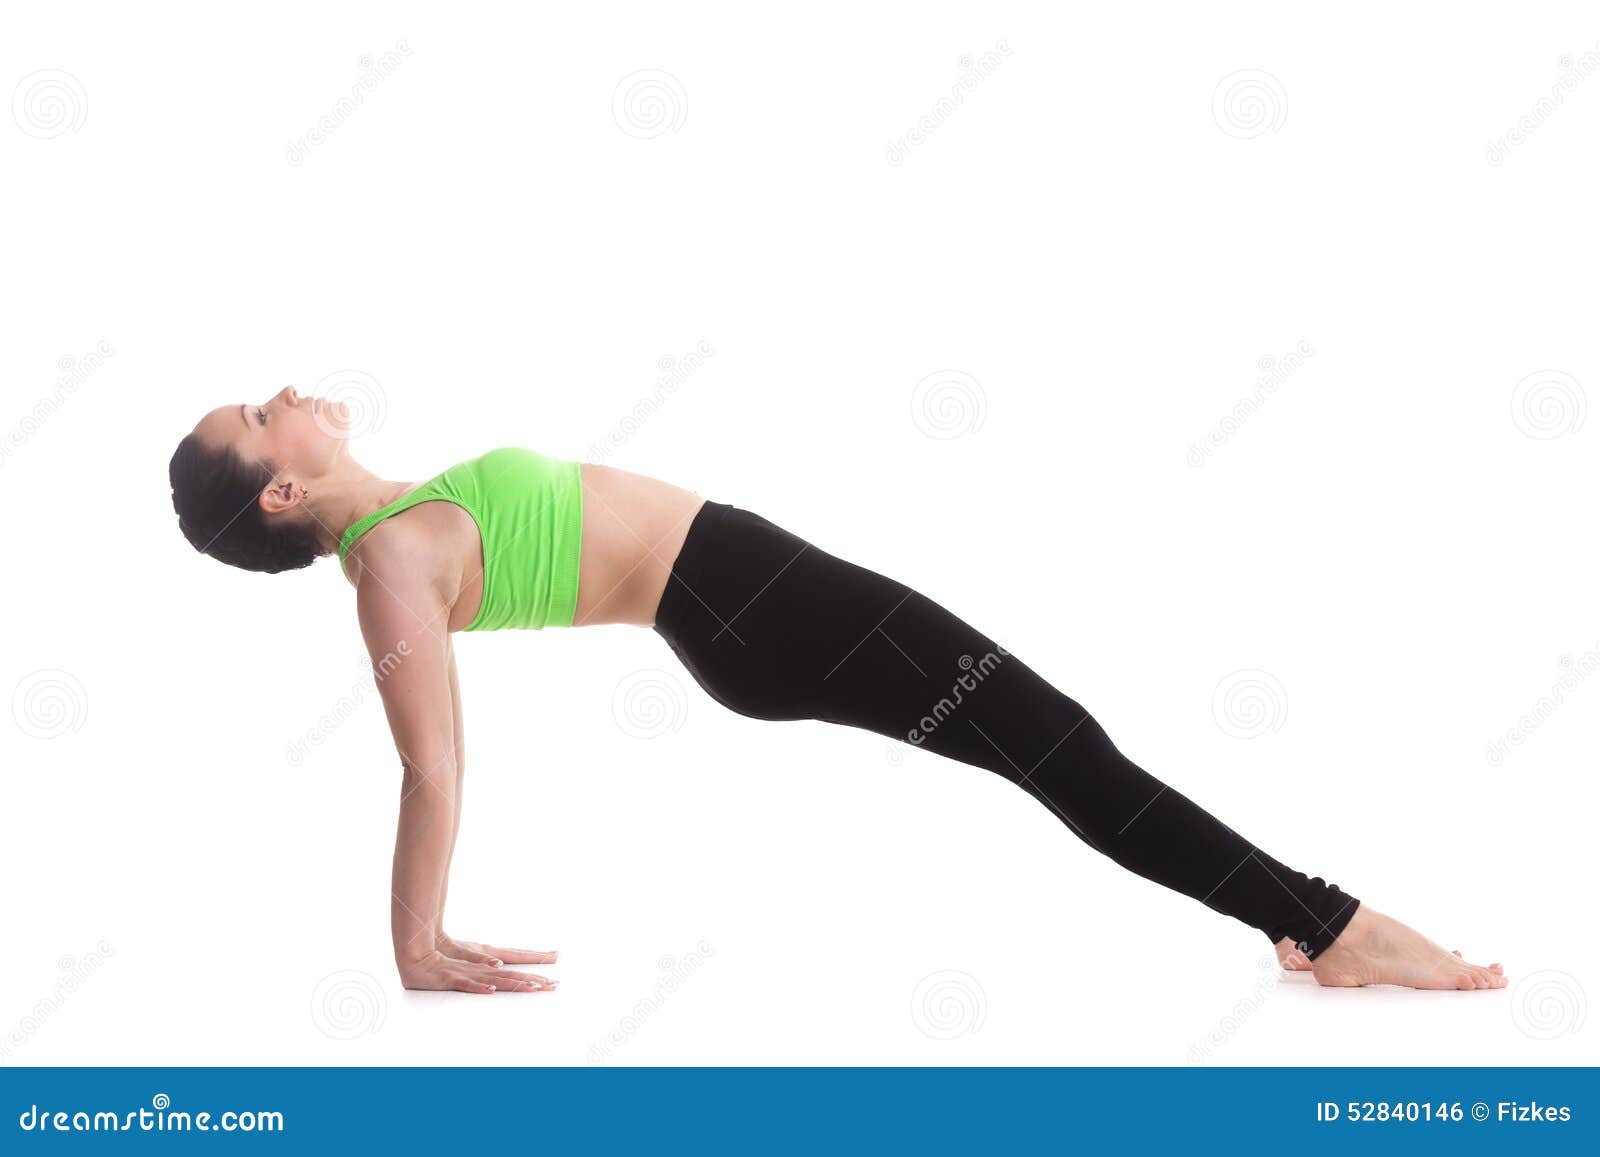 upward plank yoga pose